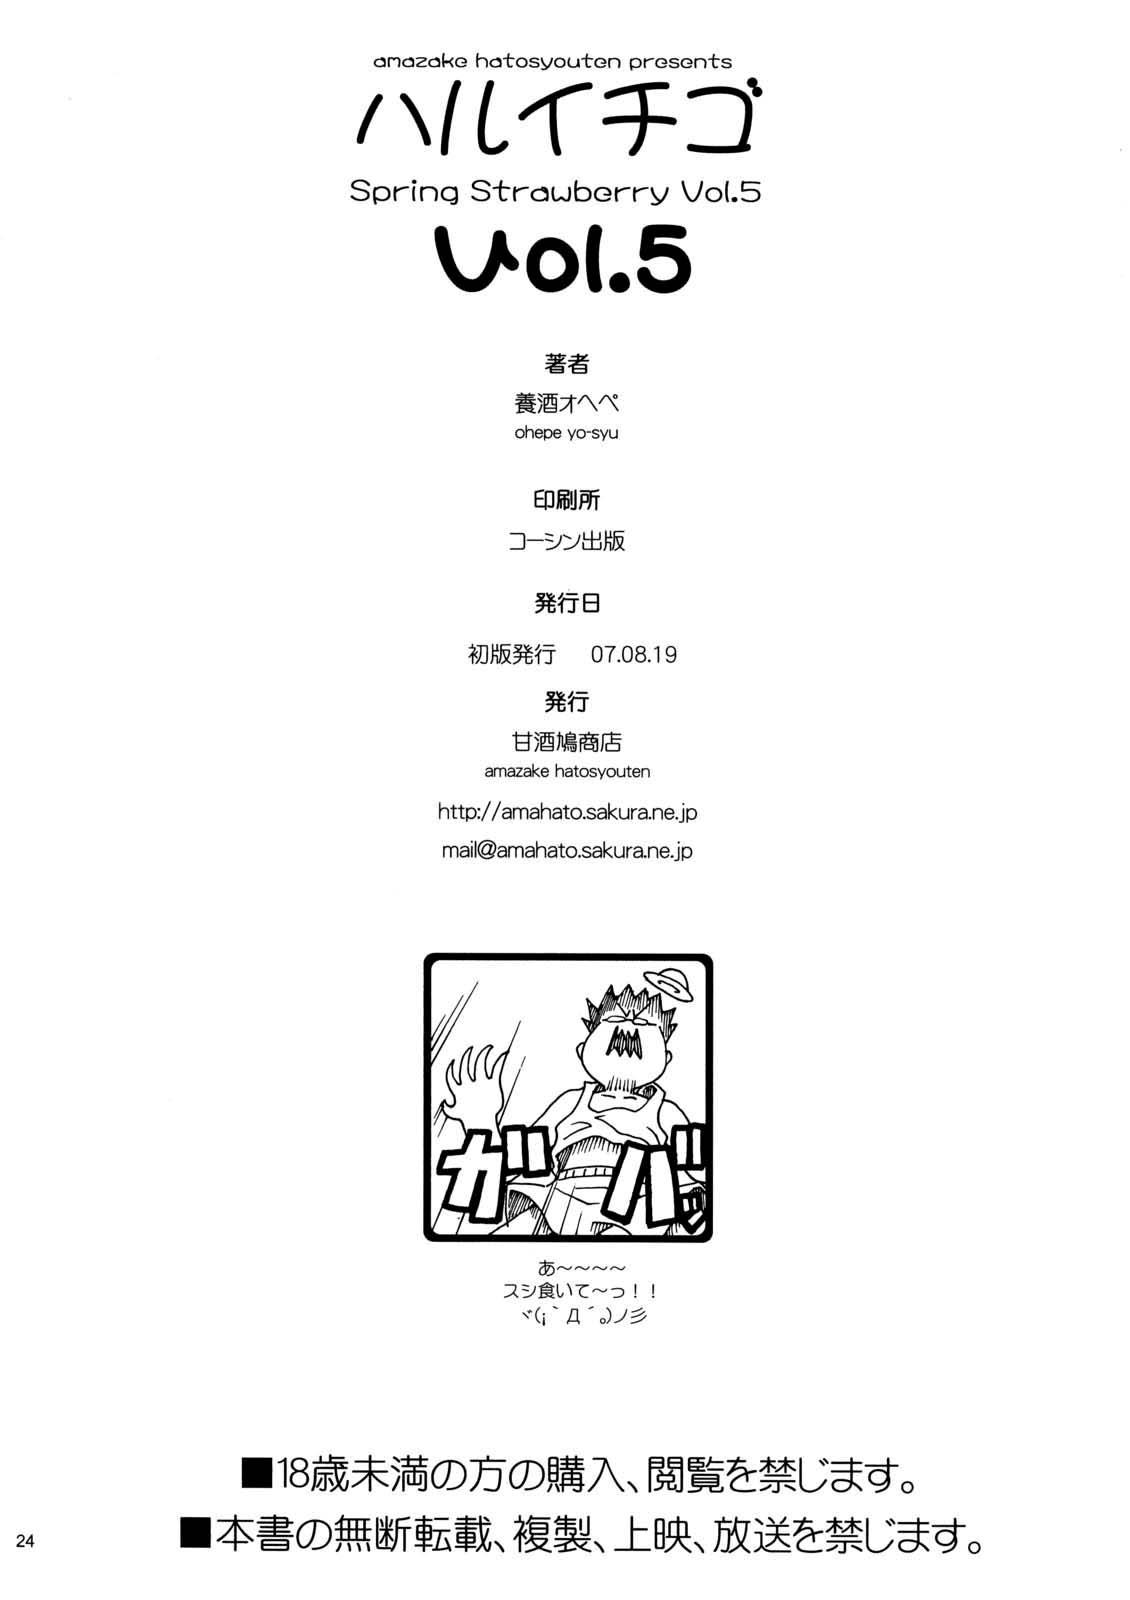 Haru Ichigo Vol. 5 - Spring Strawberry Vol. 5 20